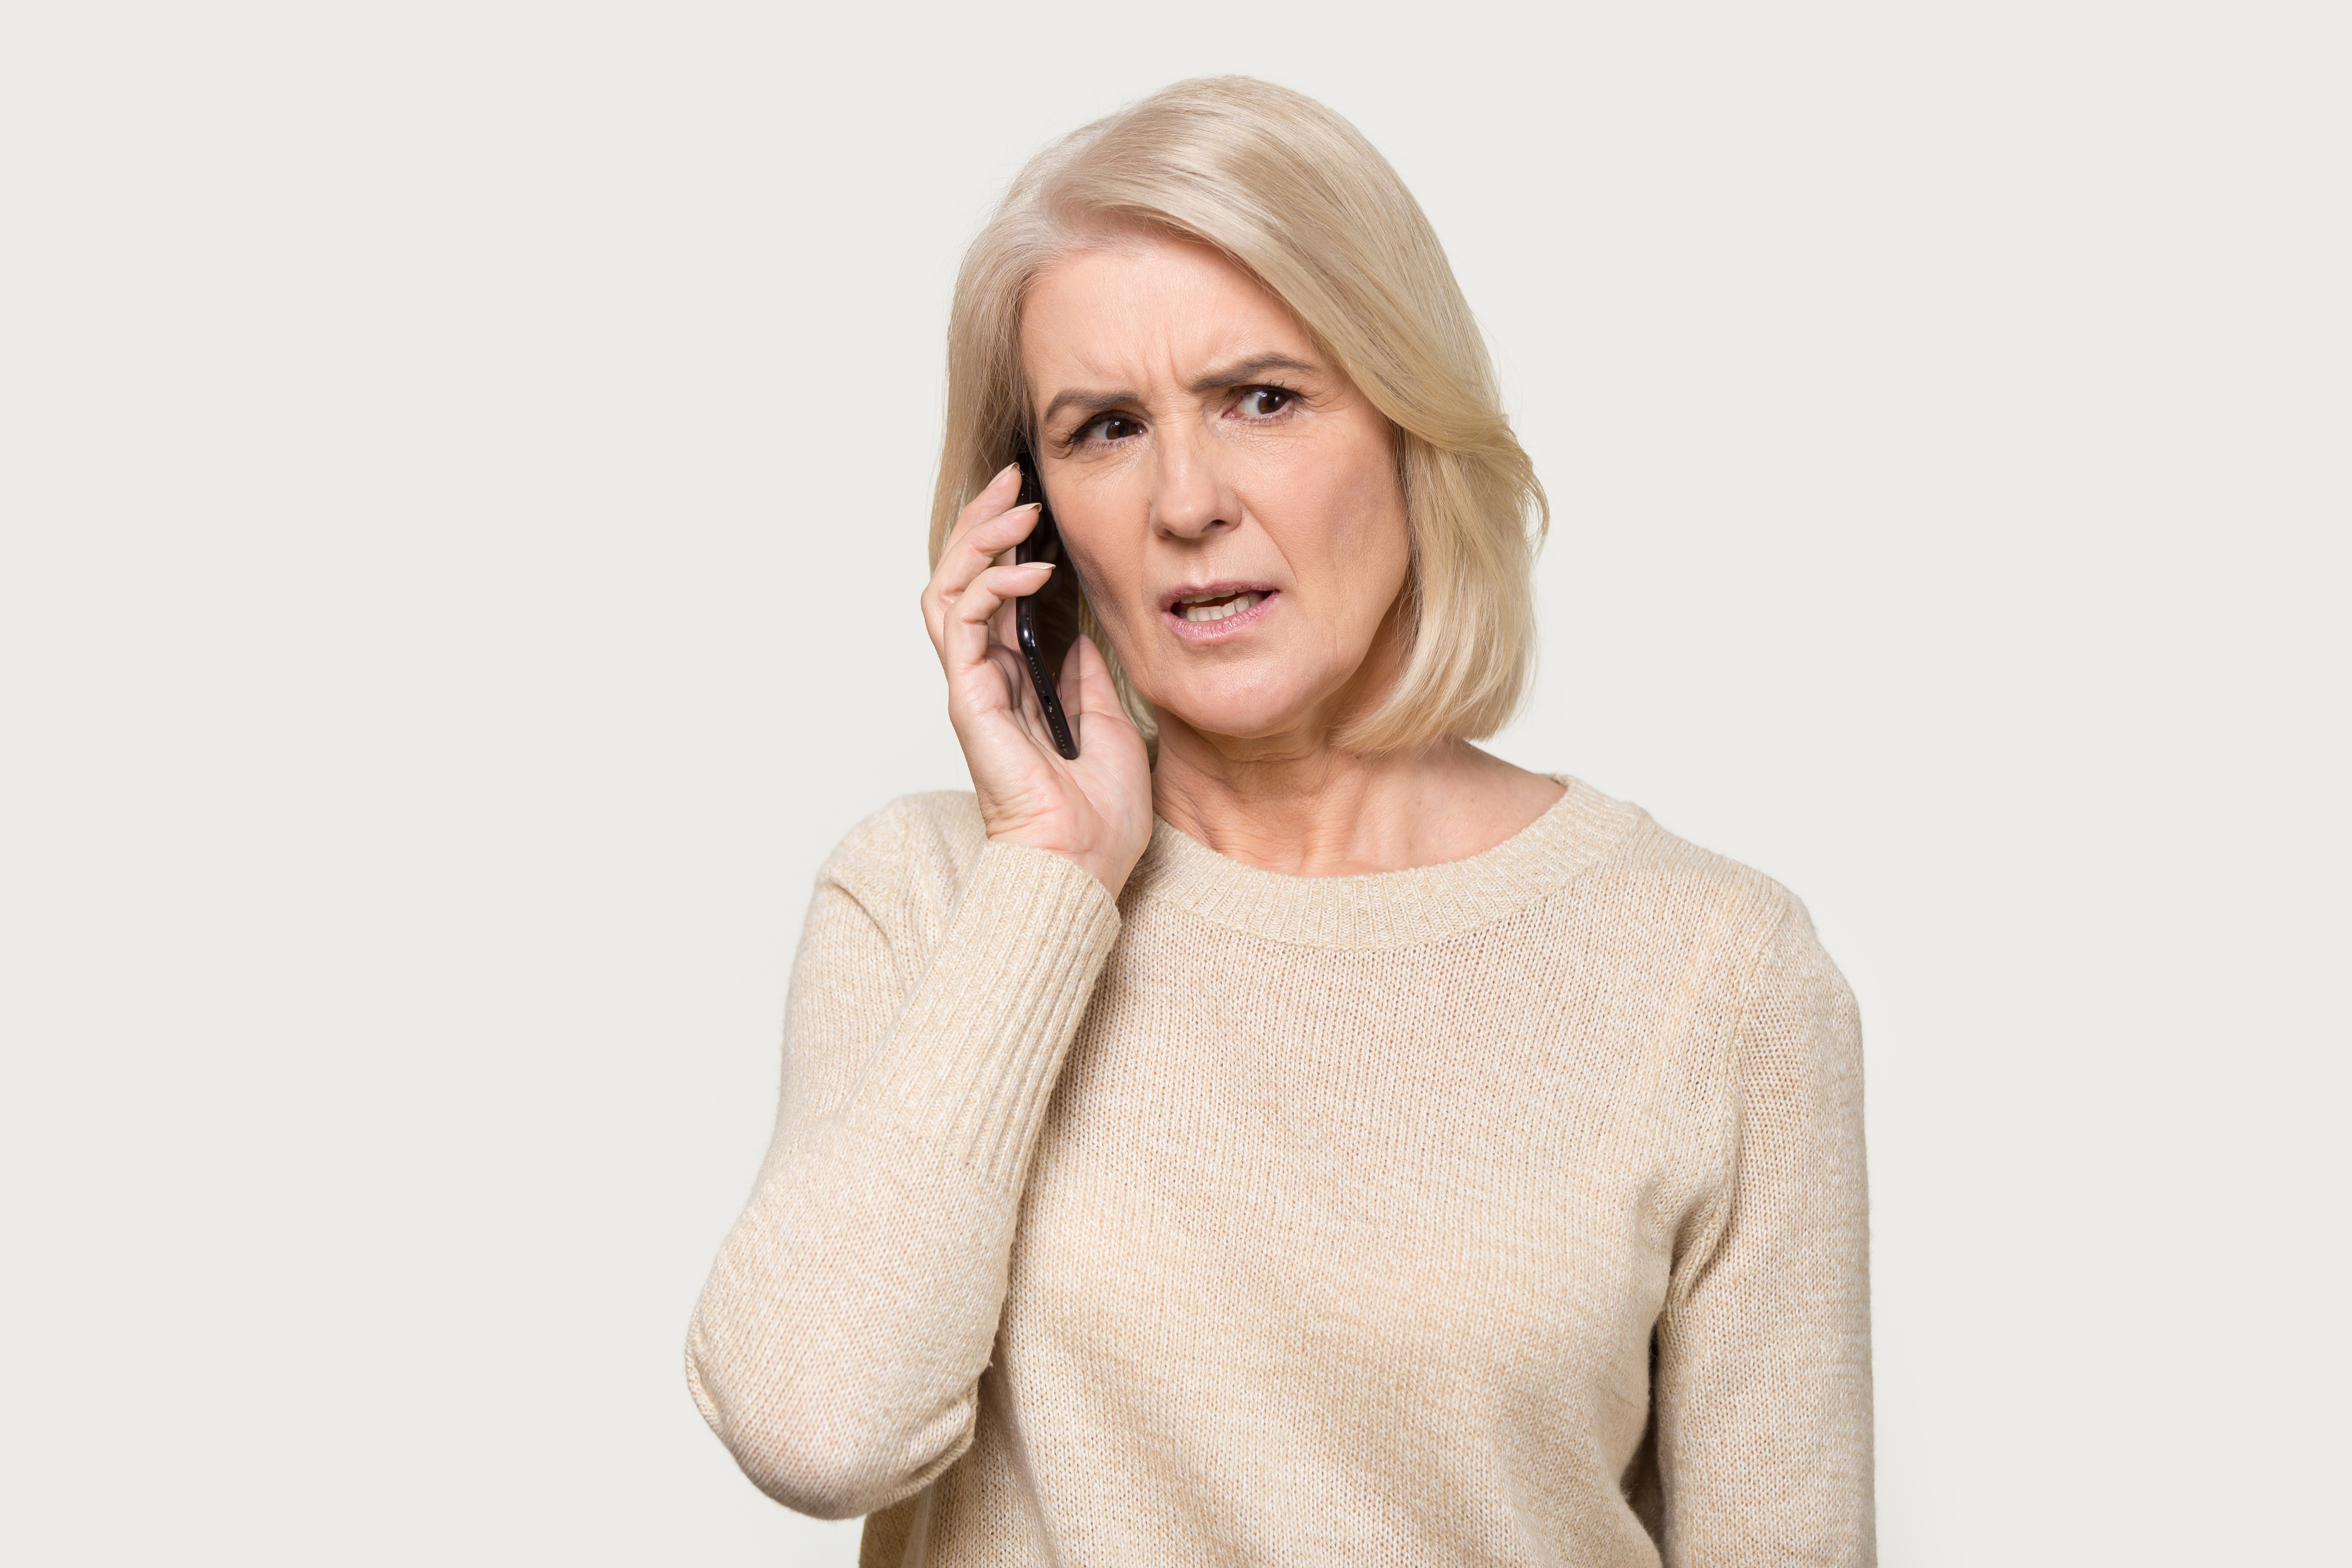 Eine Frau schaut besorgt, während sie telefoniert | Quelle: Shutterstock